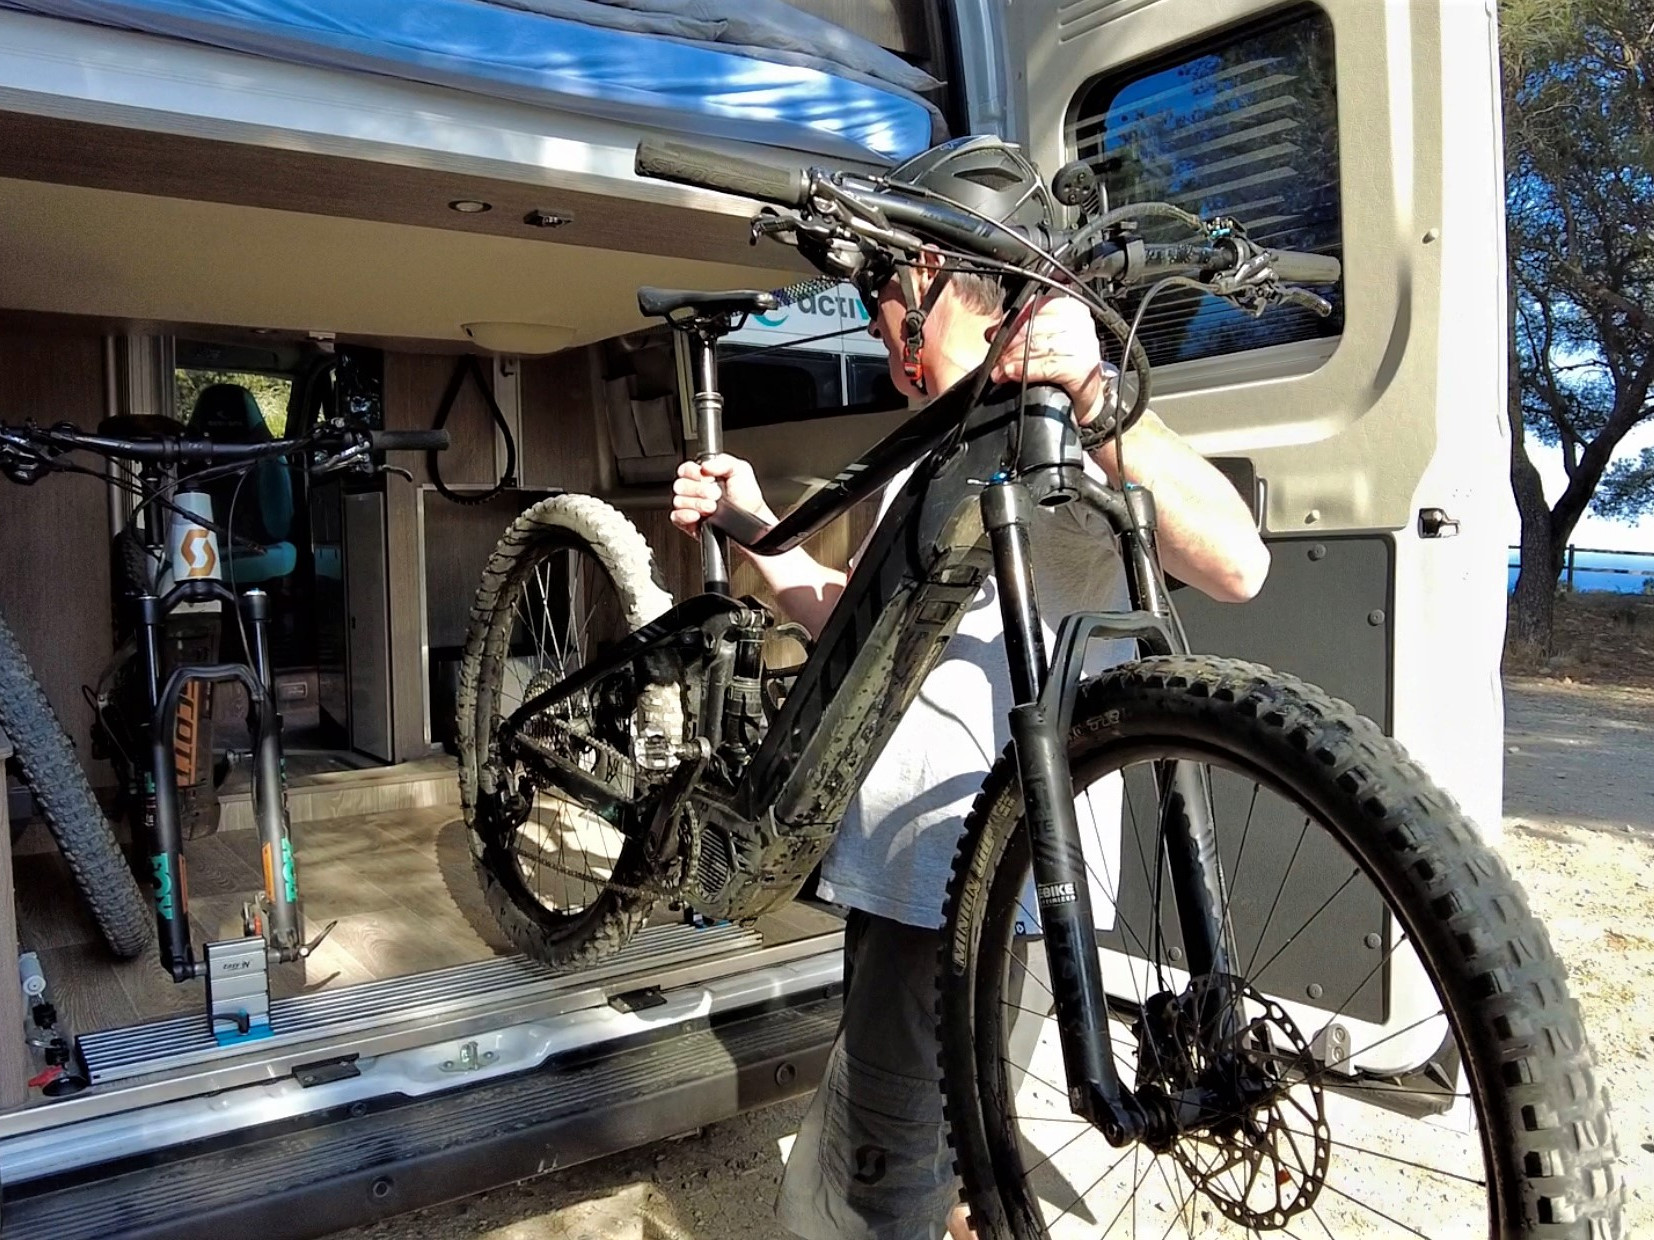 Guardar las bicicletas dentro de la furgoneta camper